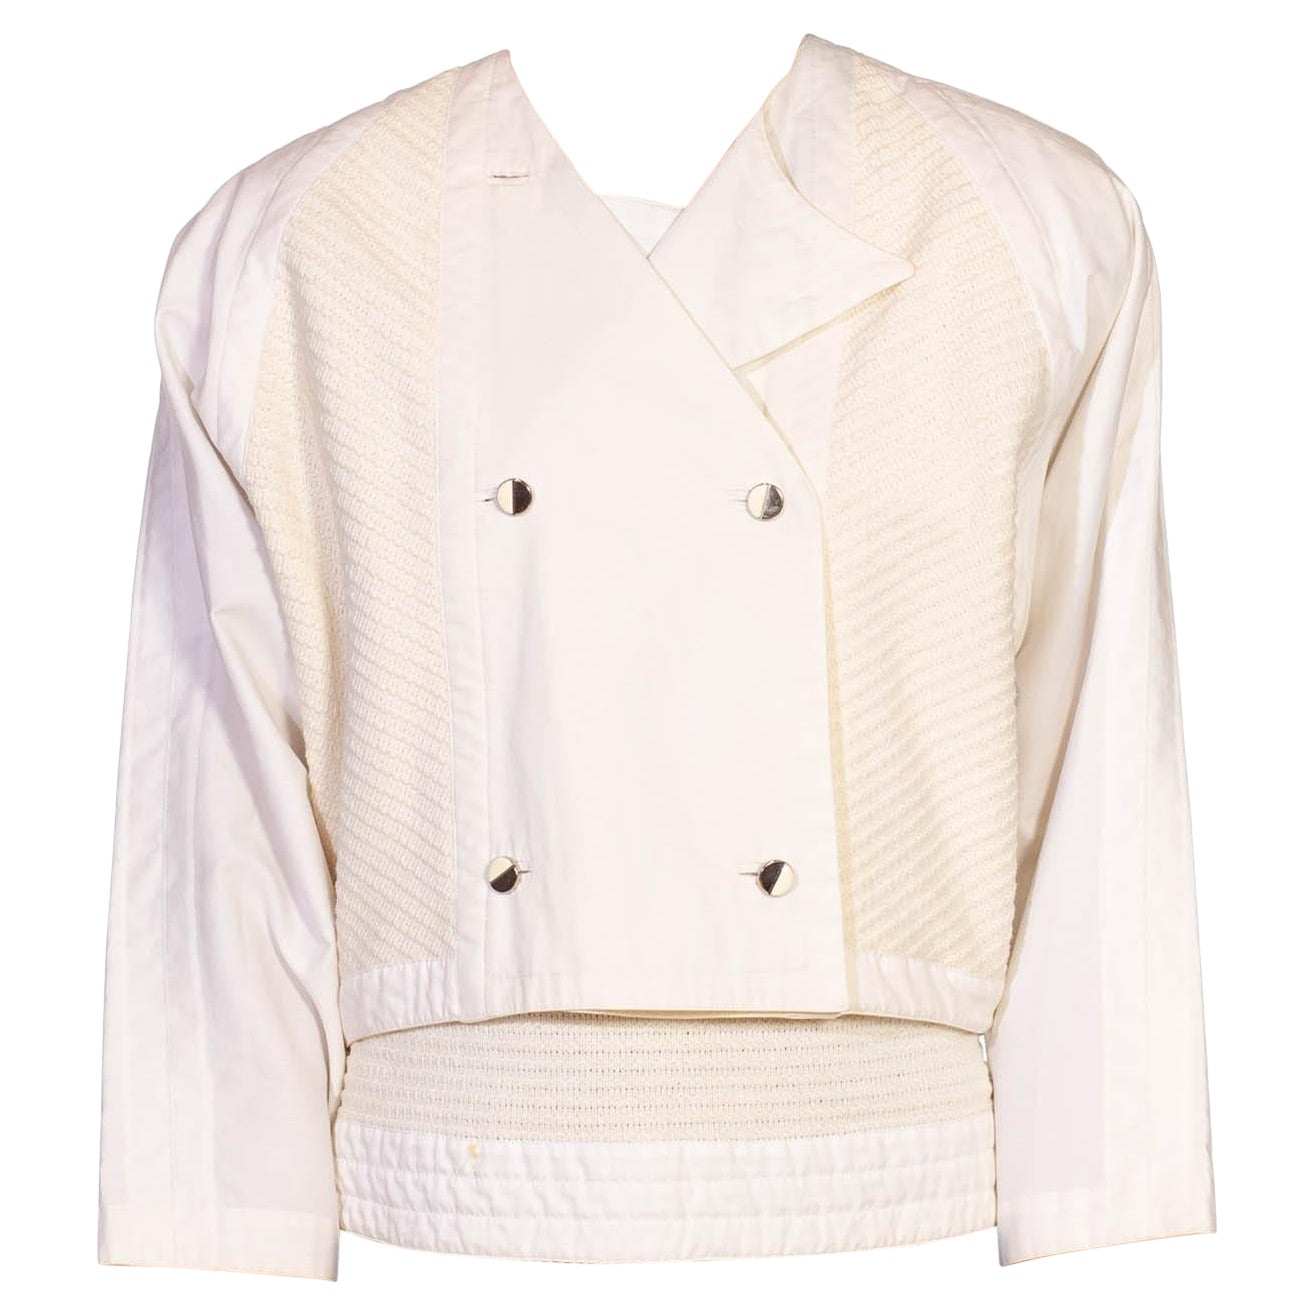 1980S Gianni Versace White Cotton Textured Top & Jacket Ensemble